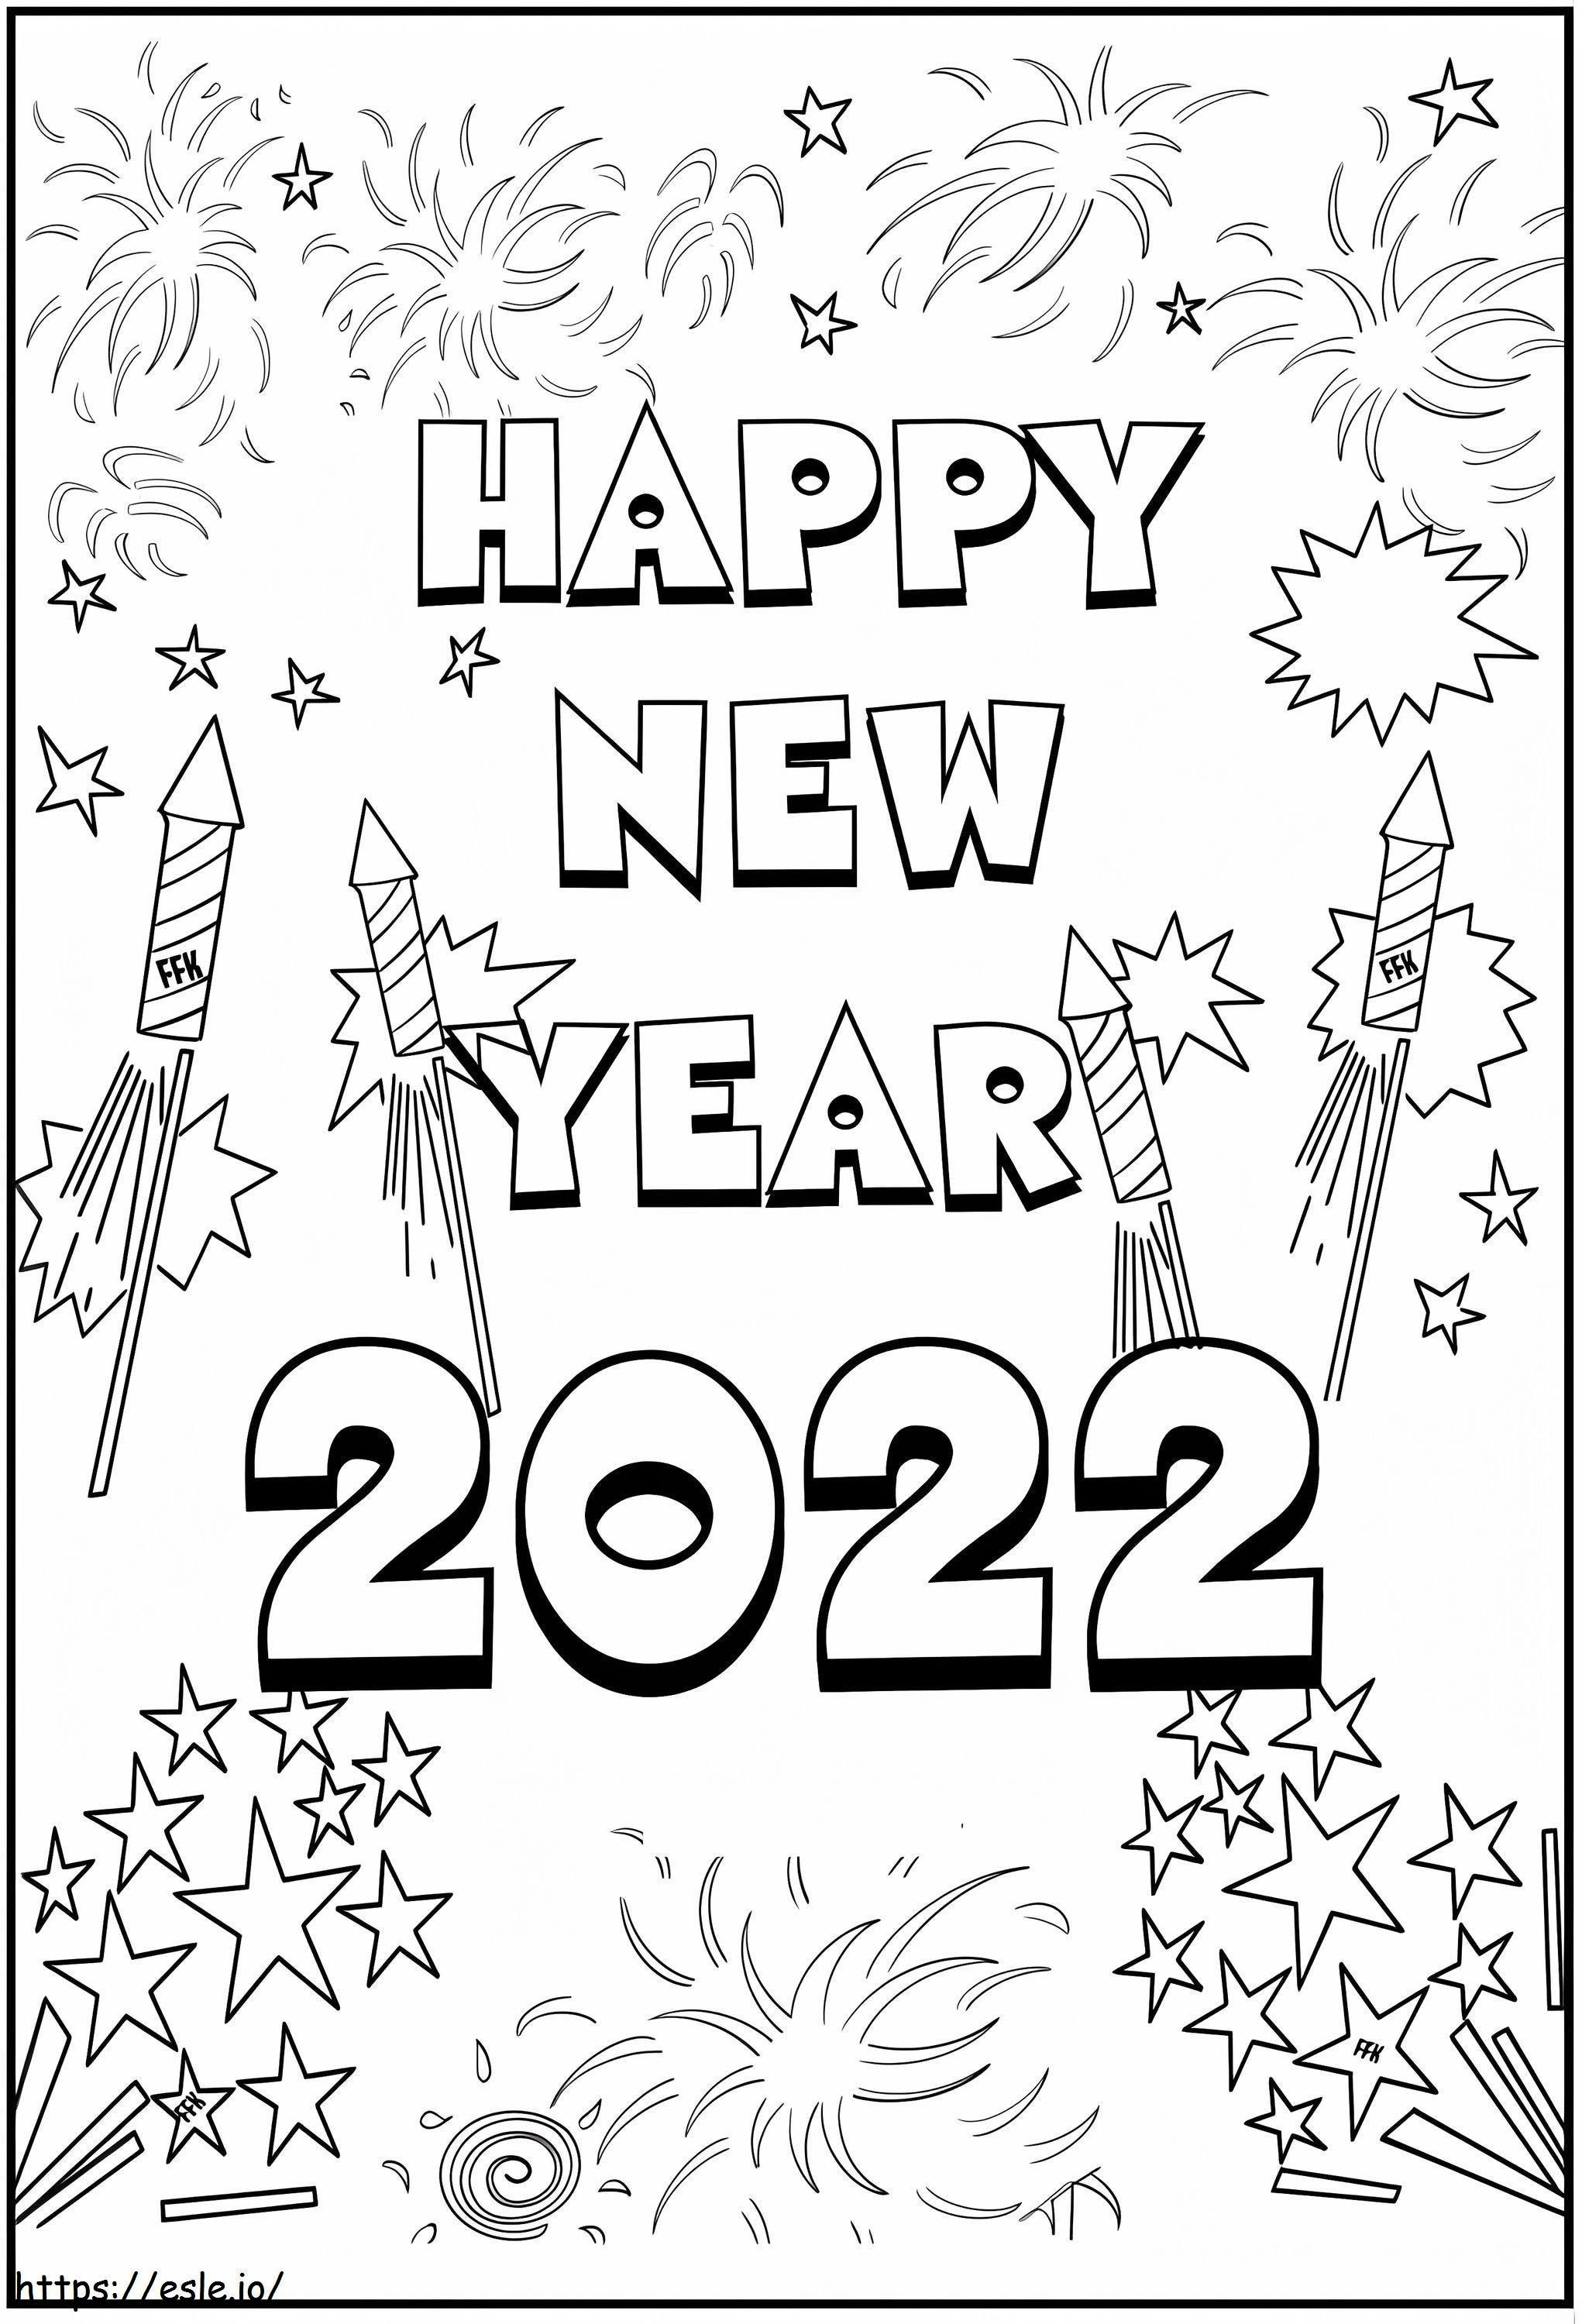 Felice anno nuovo 2022 con fuochi d'artificio da colorare